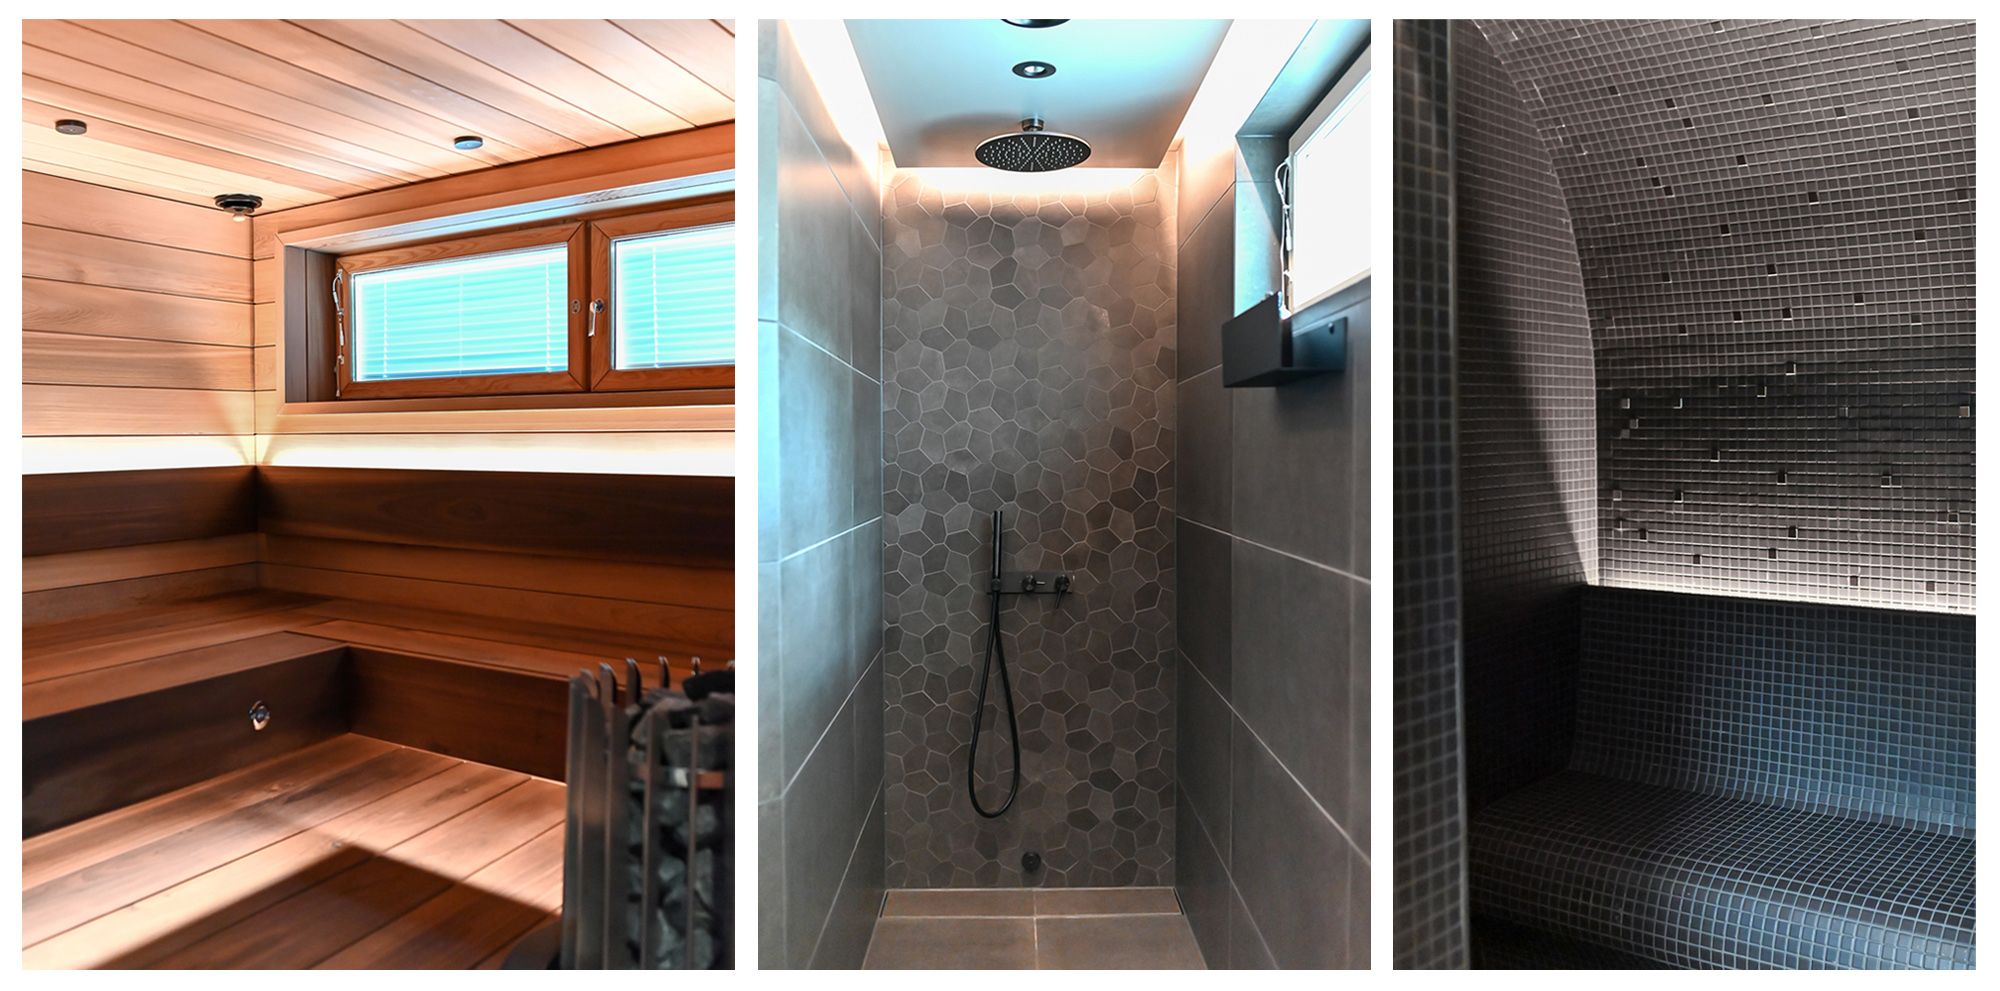 Suihku- ja saunatilojen täydellinen remontti, jossa nauhoilla luotiin tilaan tunnelmaa. Kuvat: Ekastra.